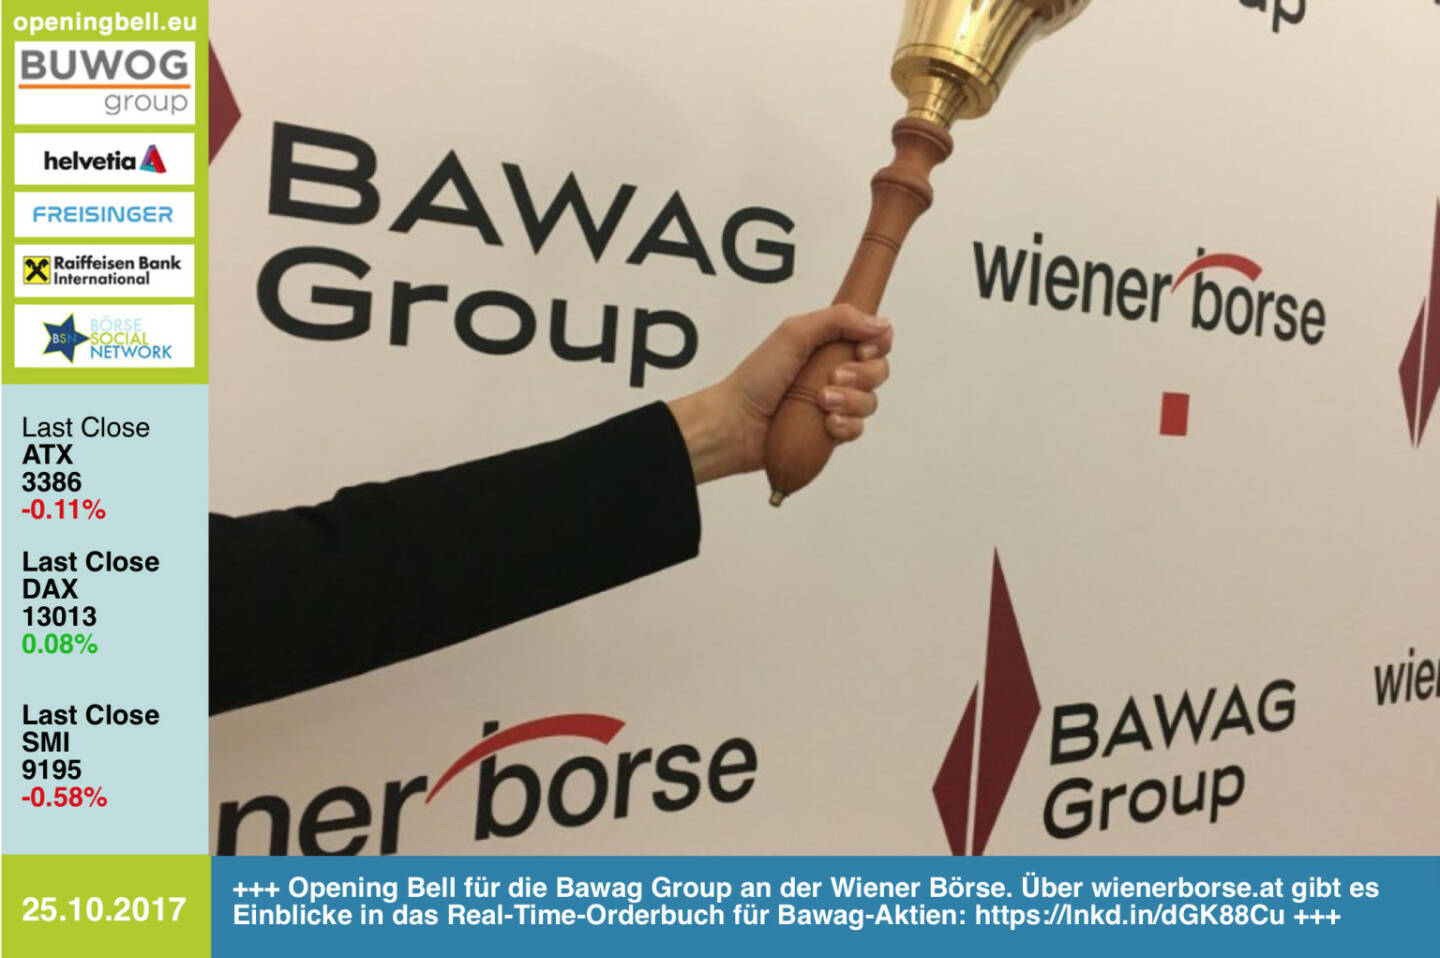 #openingbell am 25.10.: Opening Bell für die Bawag Group an der Wiener Börse. Über wienerborse.at gibt es Einblicke in das Real-Time-Orderbuch für Bawag-Aktien. Direktlink: https://lnkd.in/dGK88Cu http://www.boerse-social.com/goboersewien https://www.facebook.com/groups/GeldanlageNetwork/